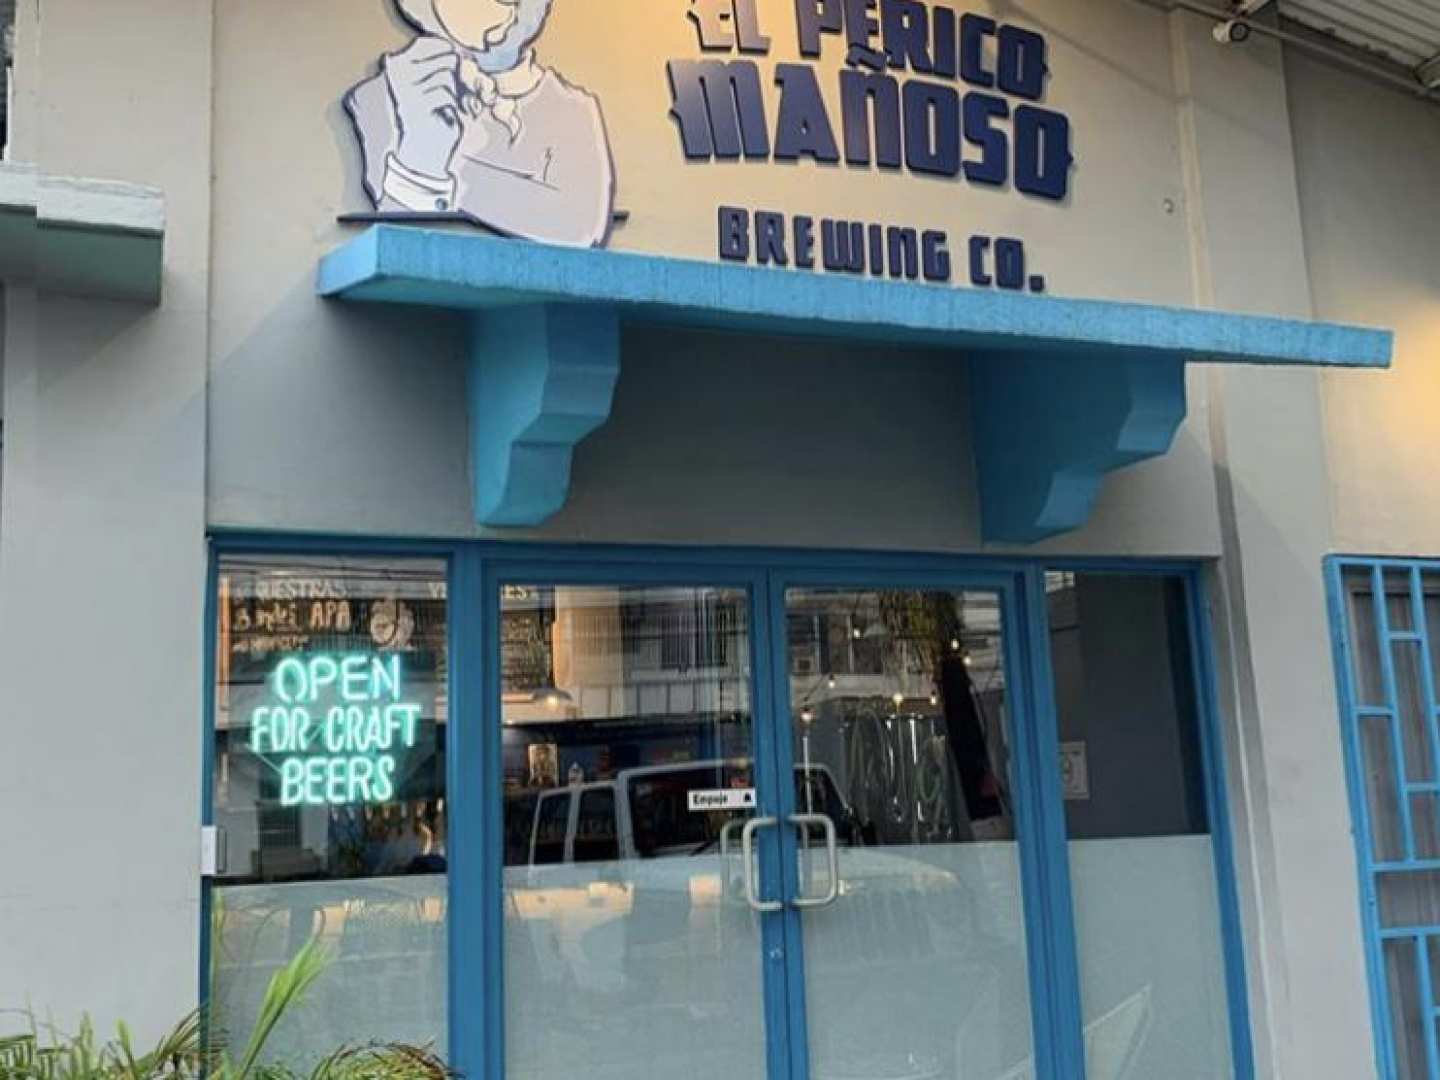 El Perico Mañoso Brewing Co